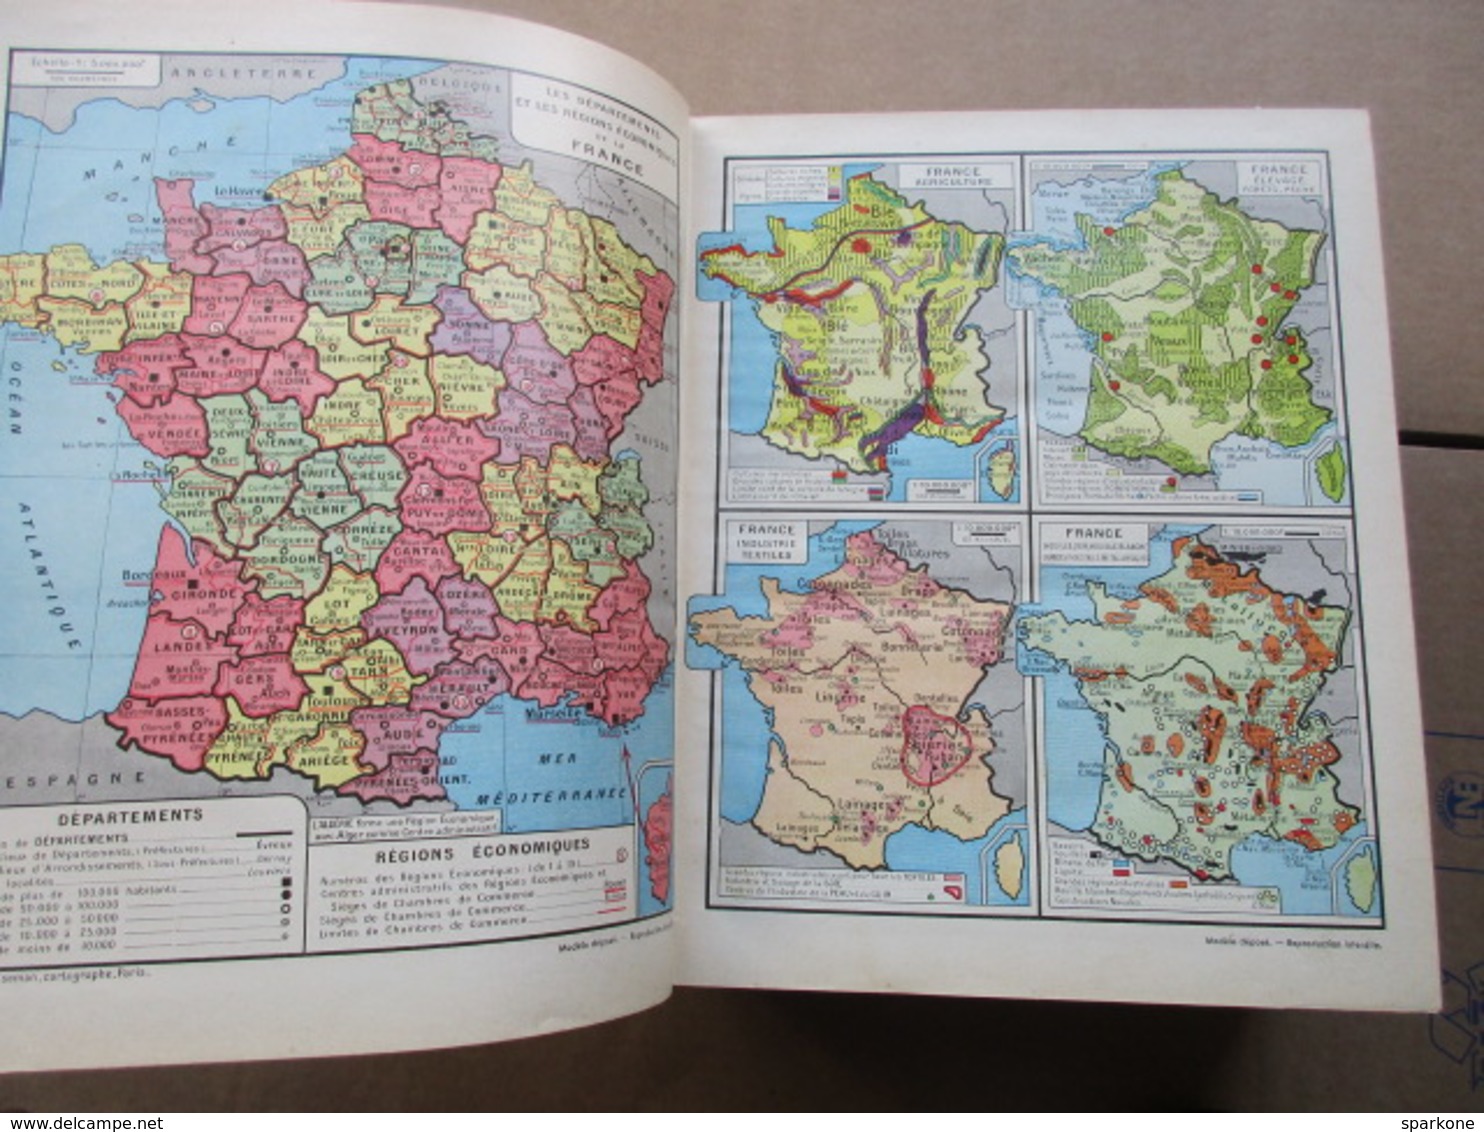 Annuaire du Commerce / Didot-Bottin / Départements + Professions et France d'Outre Mer de 1940